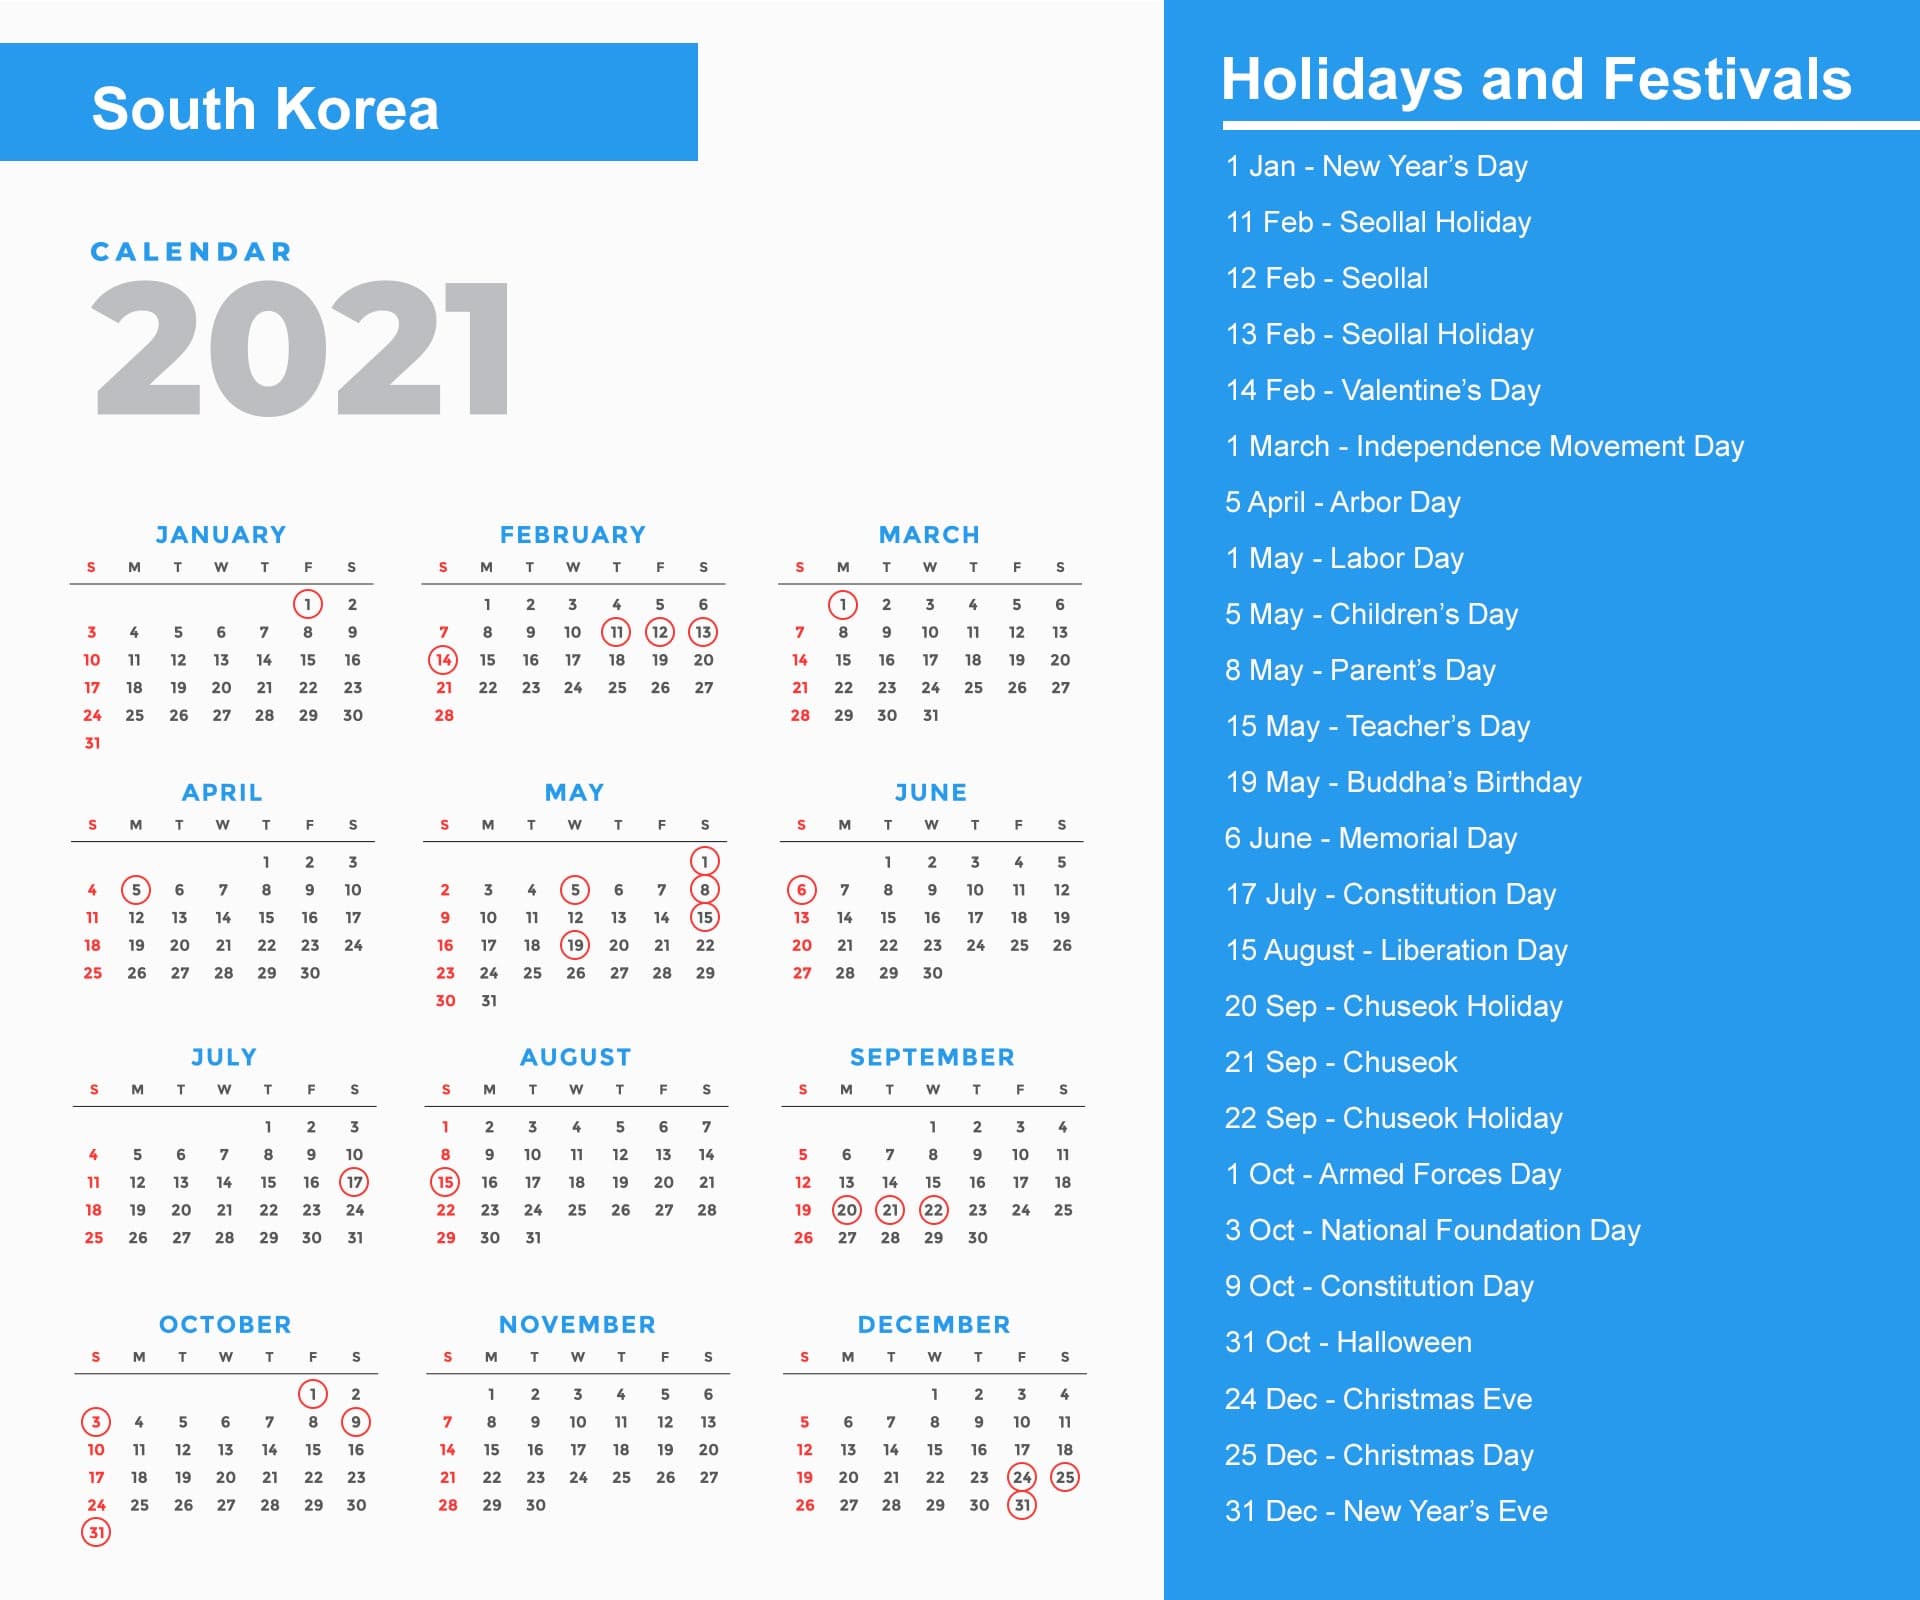 South Korea Holidays Calendar 2021